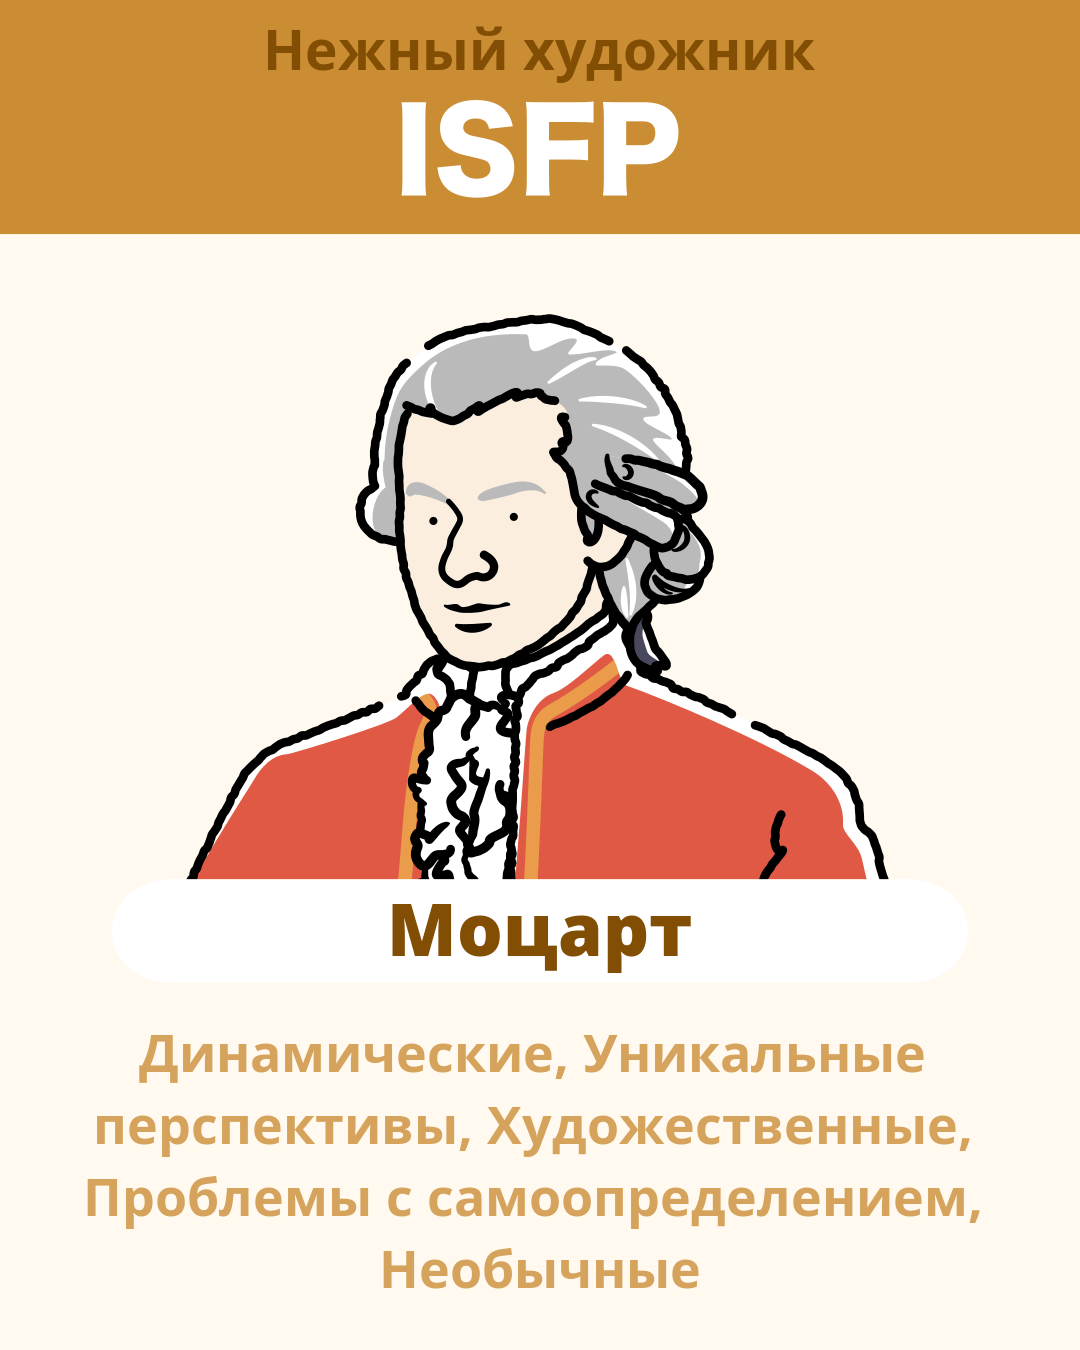 Моцарт - ISFP